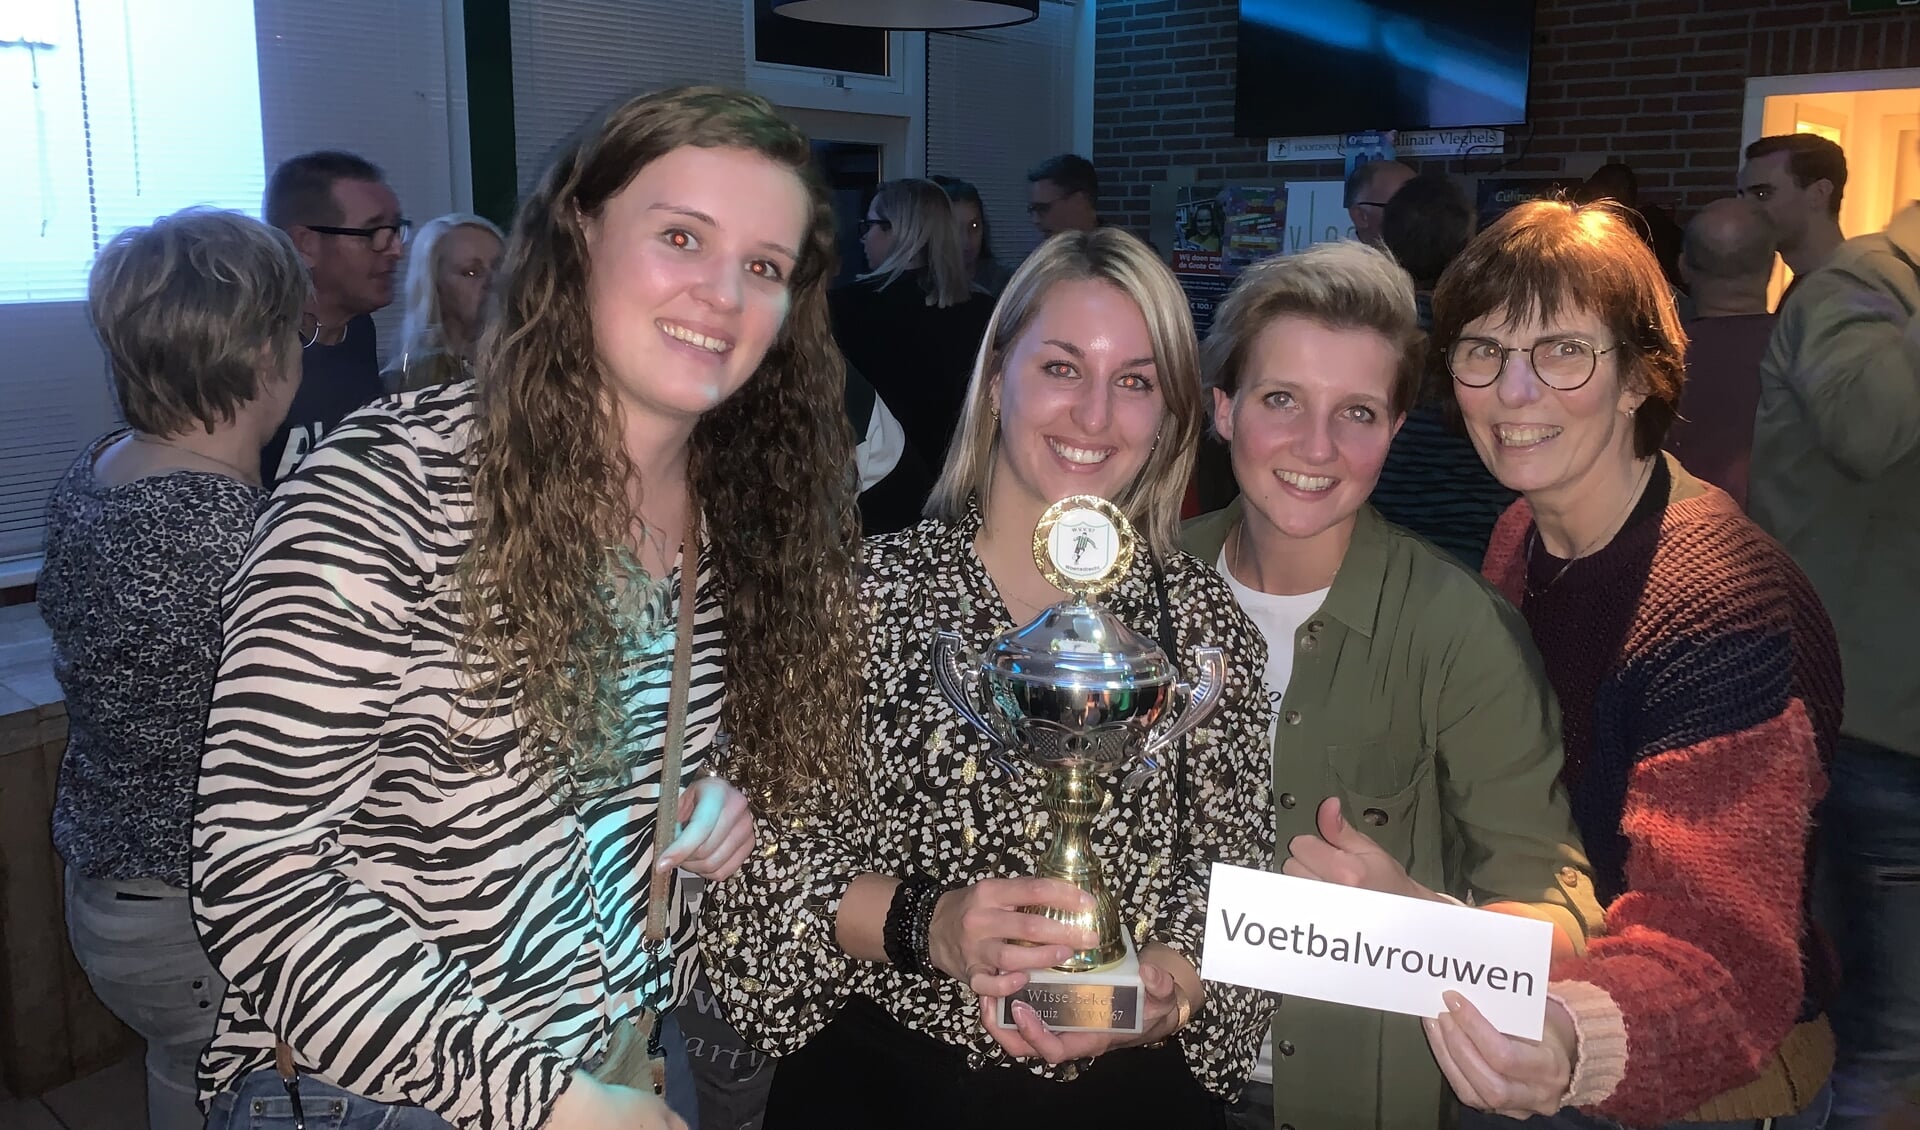 WVV-pubquiz winnaars de Voetbalvrouwen.